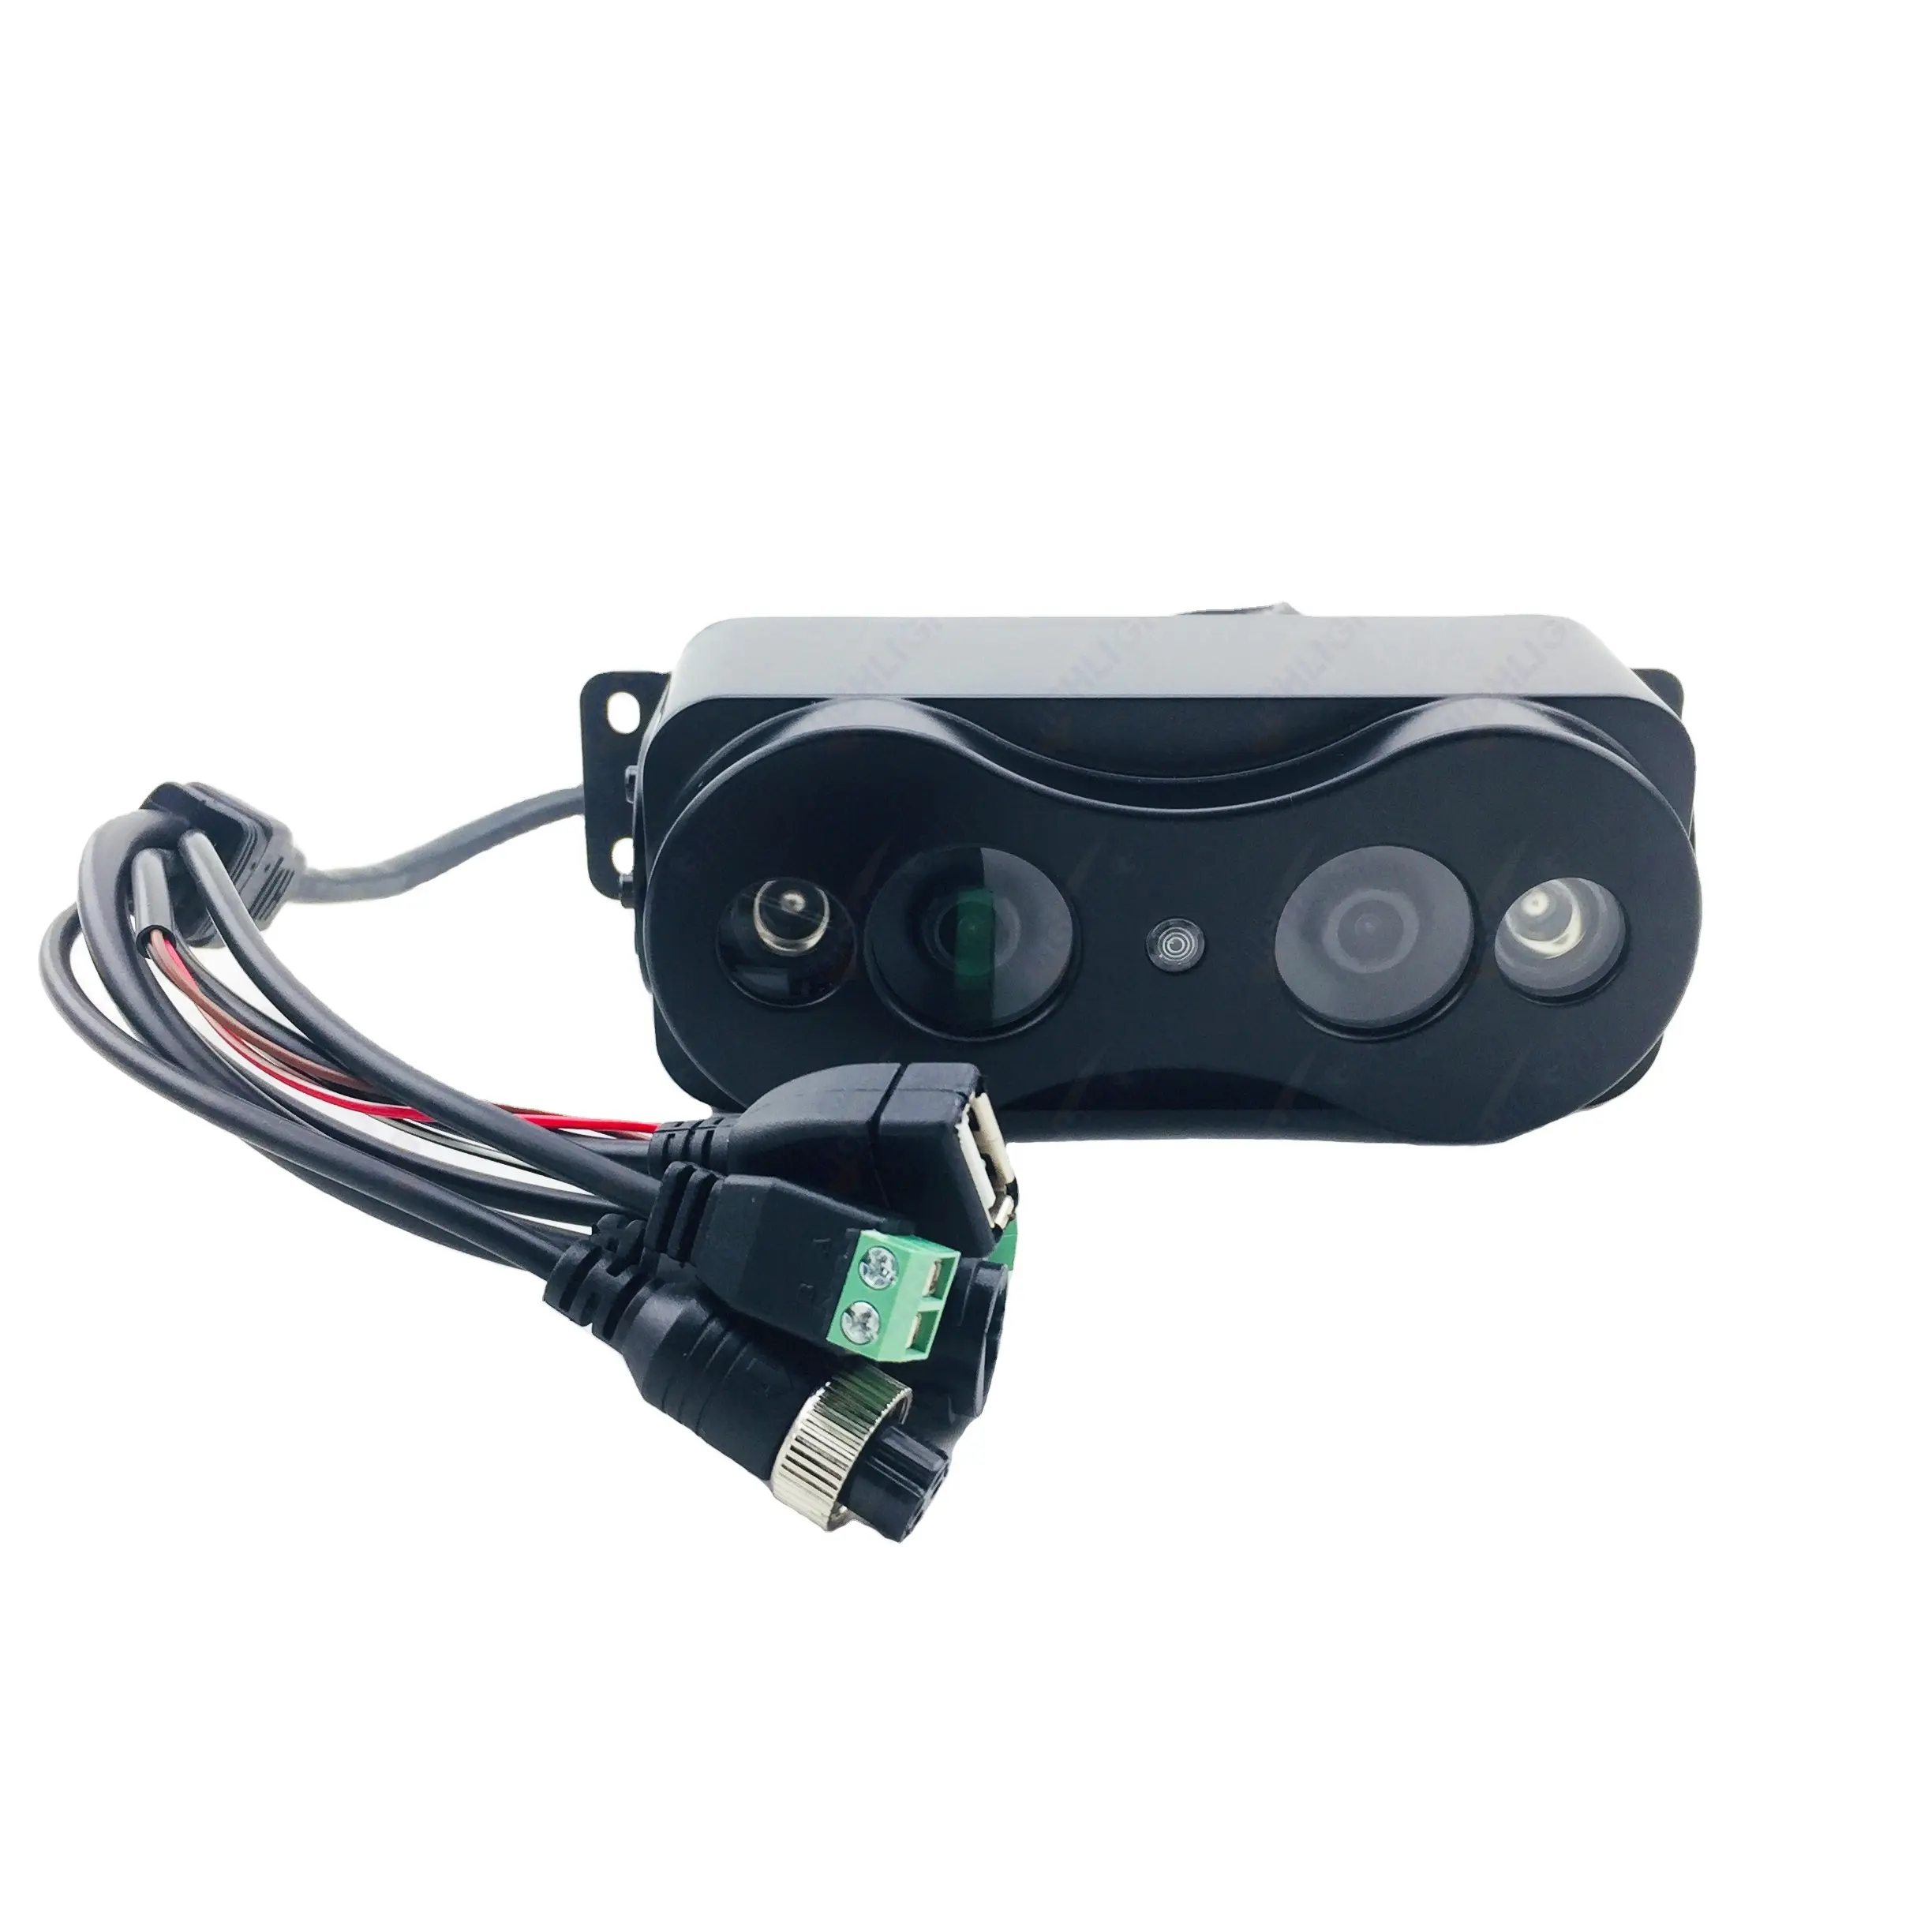 Markieren Sie HPC099 Metall schwere Abdeckung Ein-Klick-Taste LKW Fahrzeug Personen zähler GPS Kamera Bus Person Zähl gerät